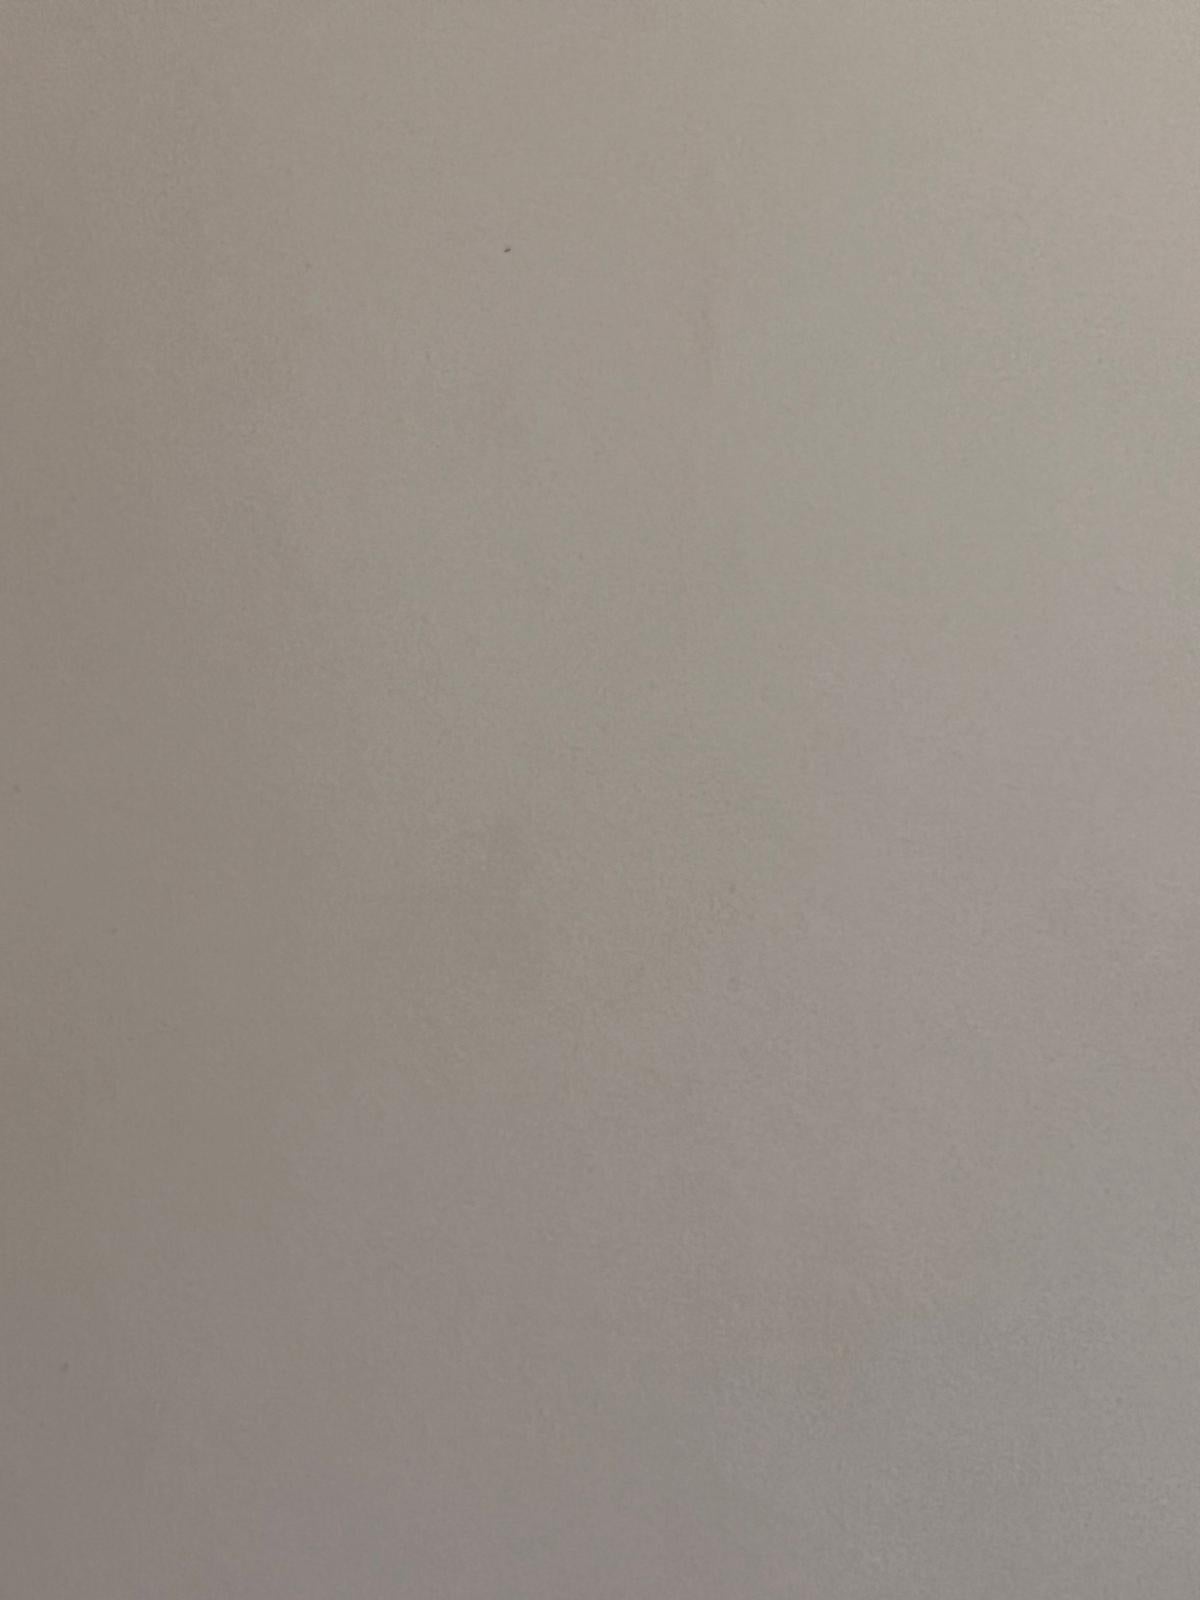 Der Künstler: 
Henri Aime Duhem (1860-1941) Franzose *siehe Anmerkungen unten, signiert 

Titel: Boote bei Sonnenuntergang

Medium:  
Gouache auf Papier, lose über Karton gelegt, ungerahmt

Karte: 9,75 x 12,75 Zoll
Gemälde: 4 x 6,75